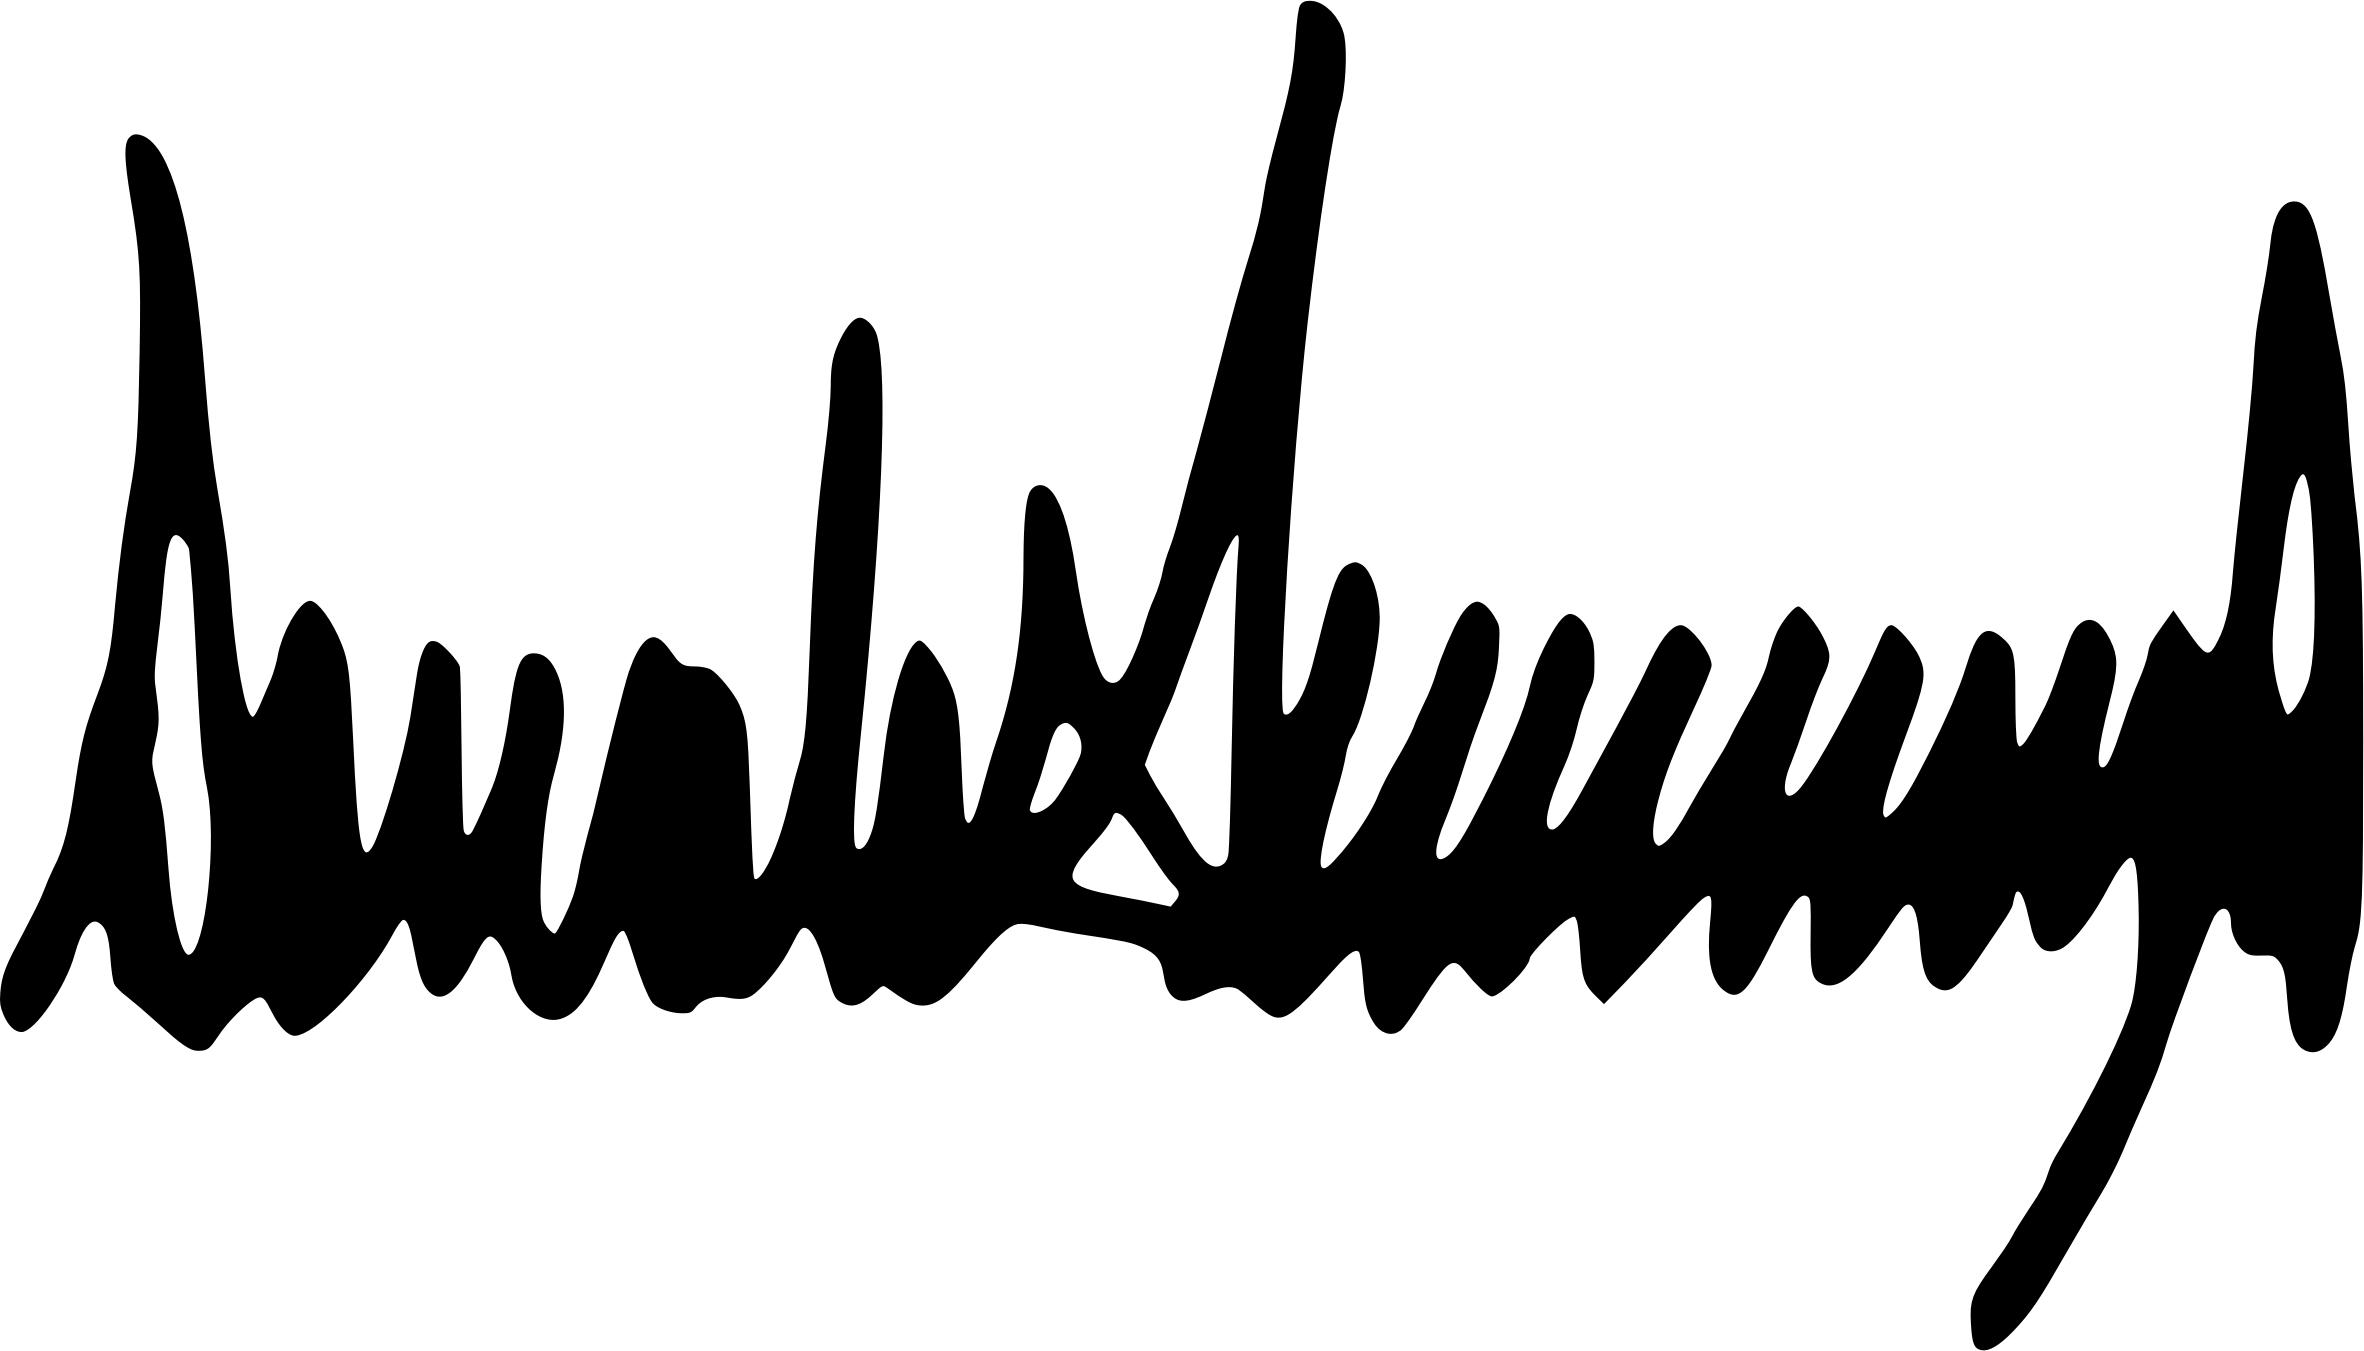 Donald Trump Signature png